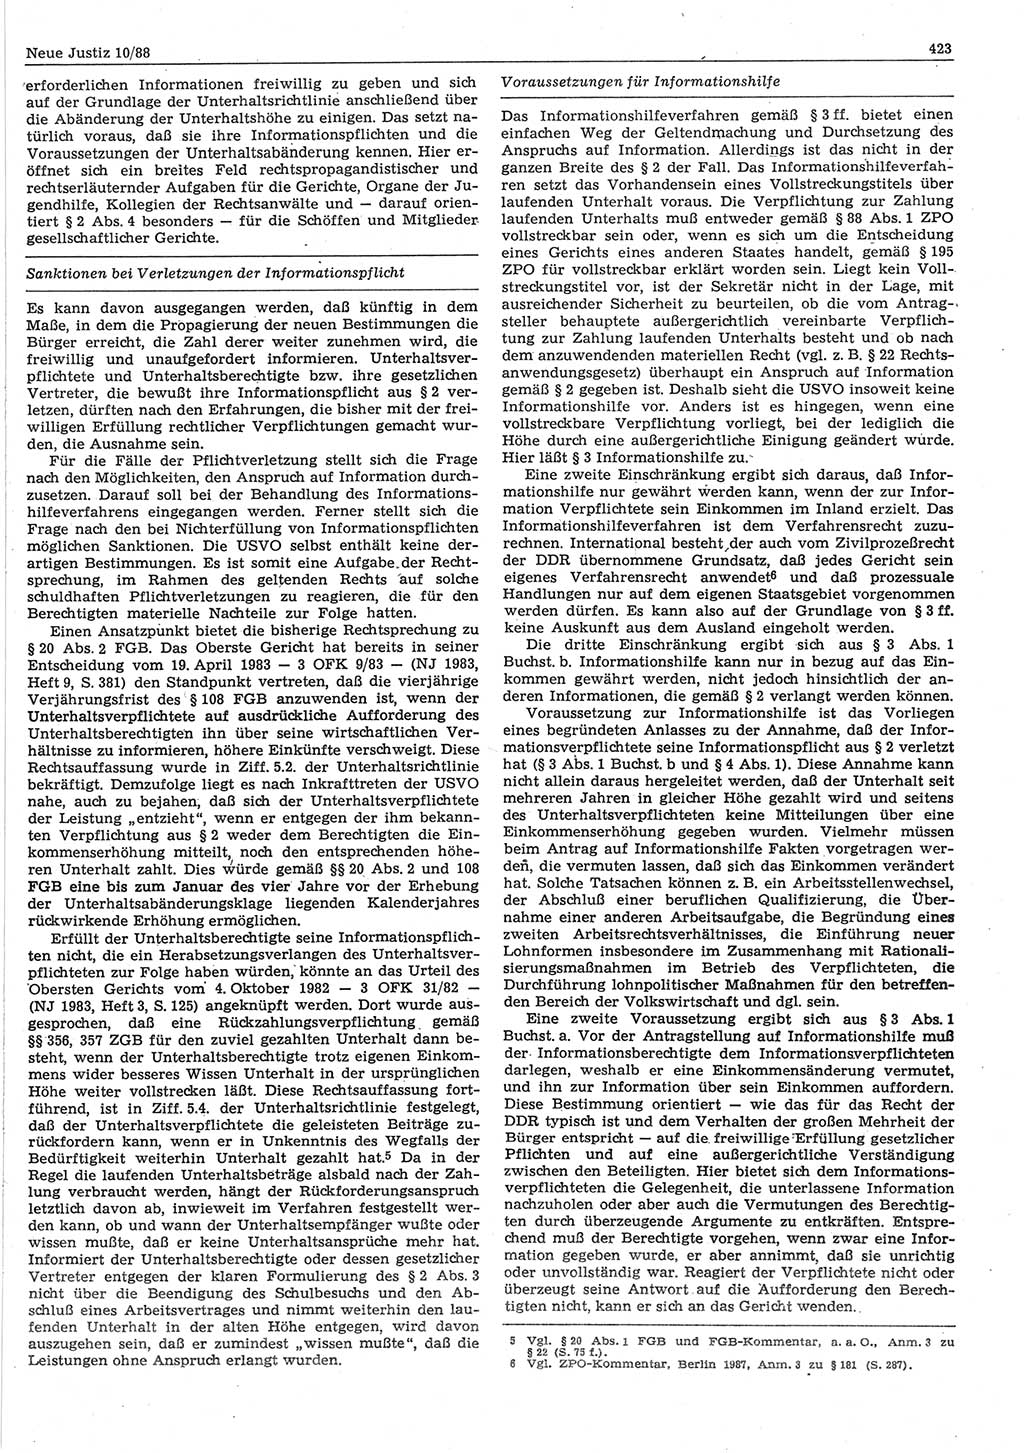 Neue Justiz (NJ), Zeitschrift für sozialistisches Recht und Gesetzlichkeit [Deutsche Demokratische Republik (DDR)], 42. Jahrgang 1988, Seite 423 (NJ DDR 1988, S. 423)